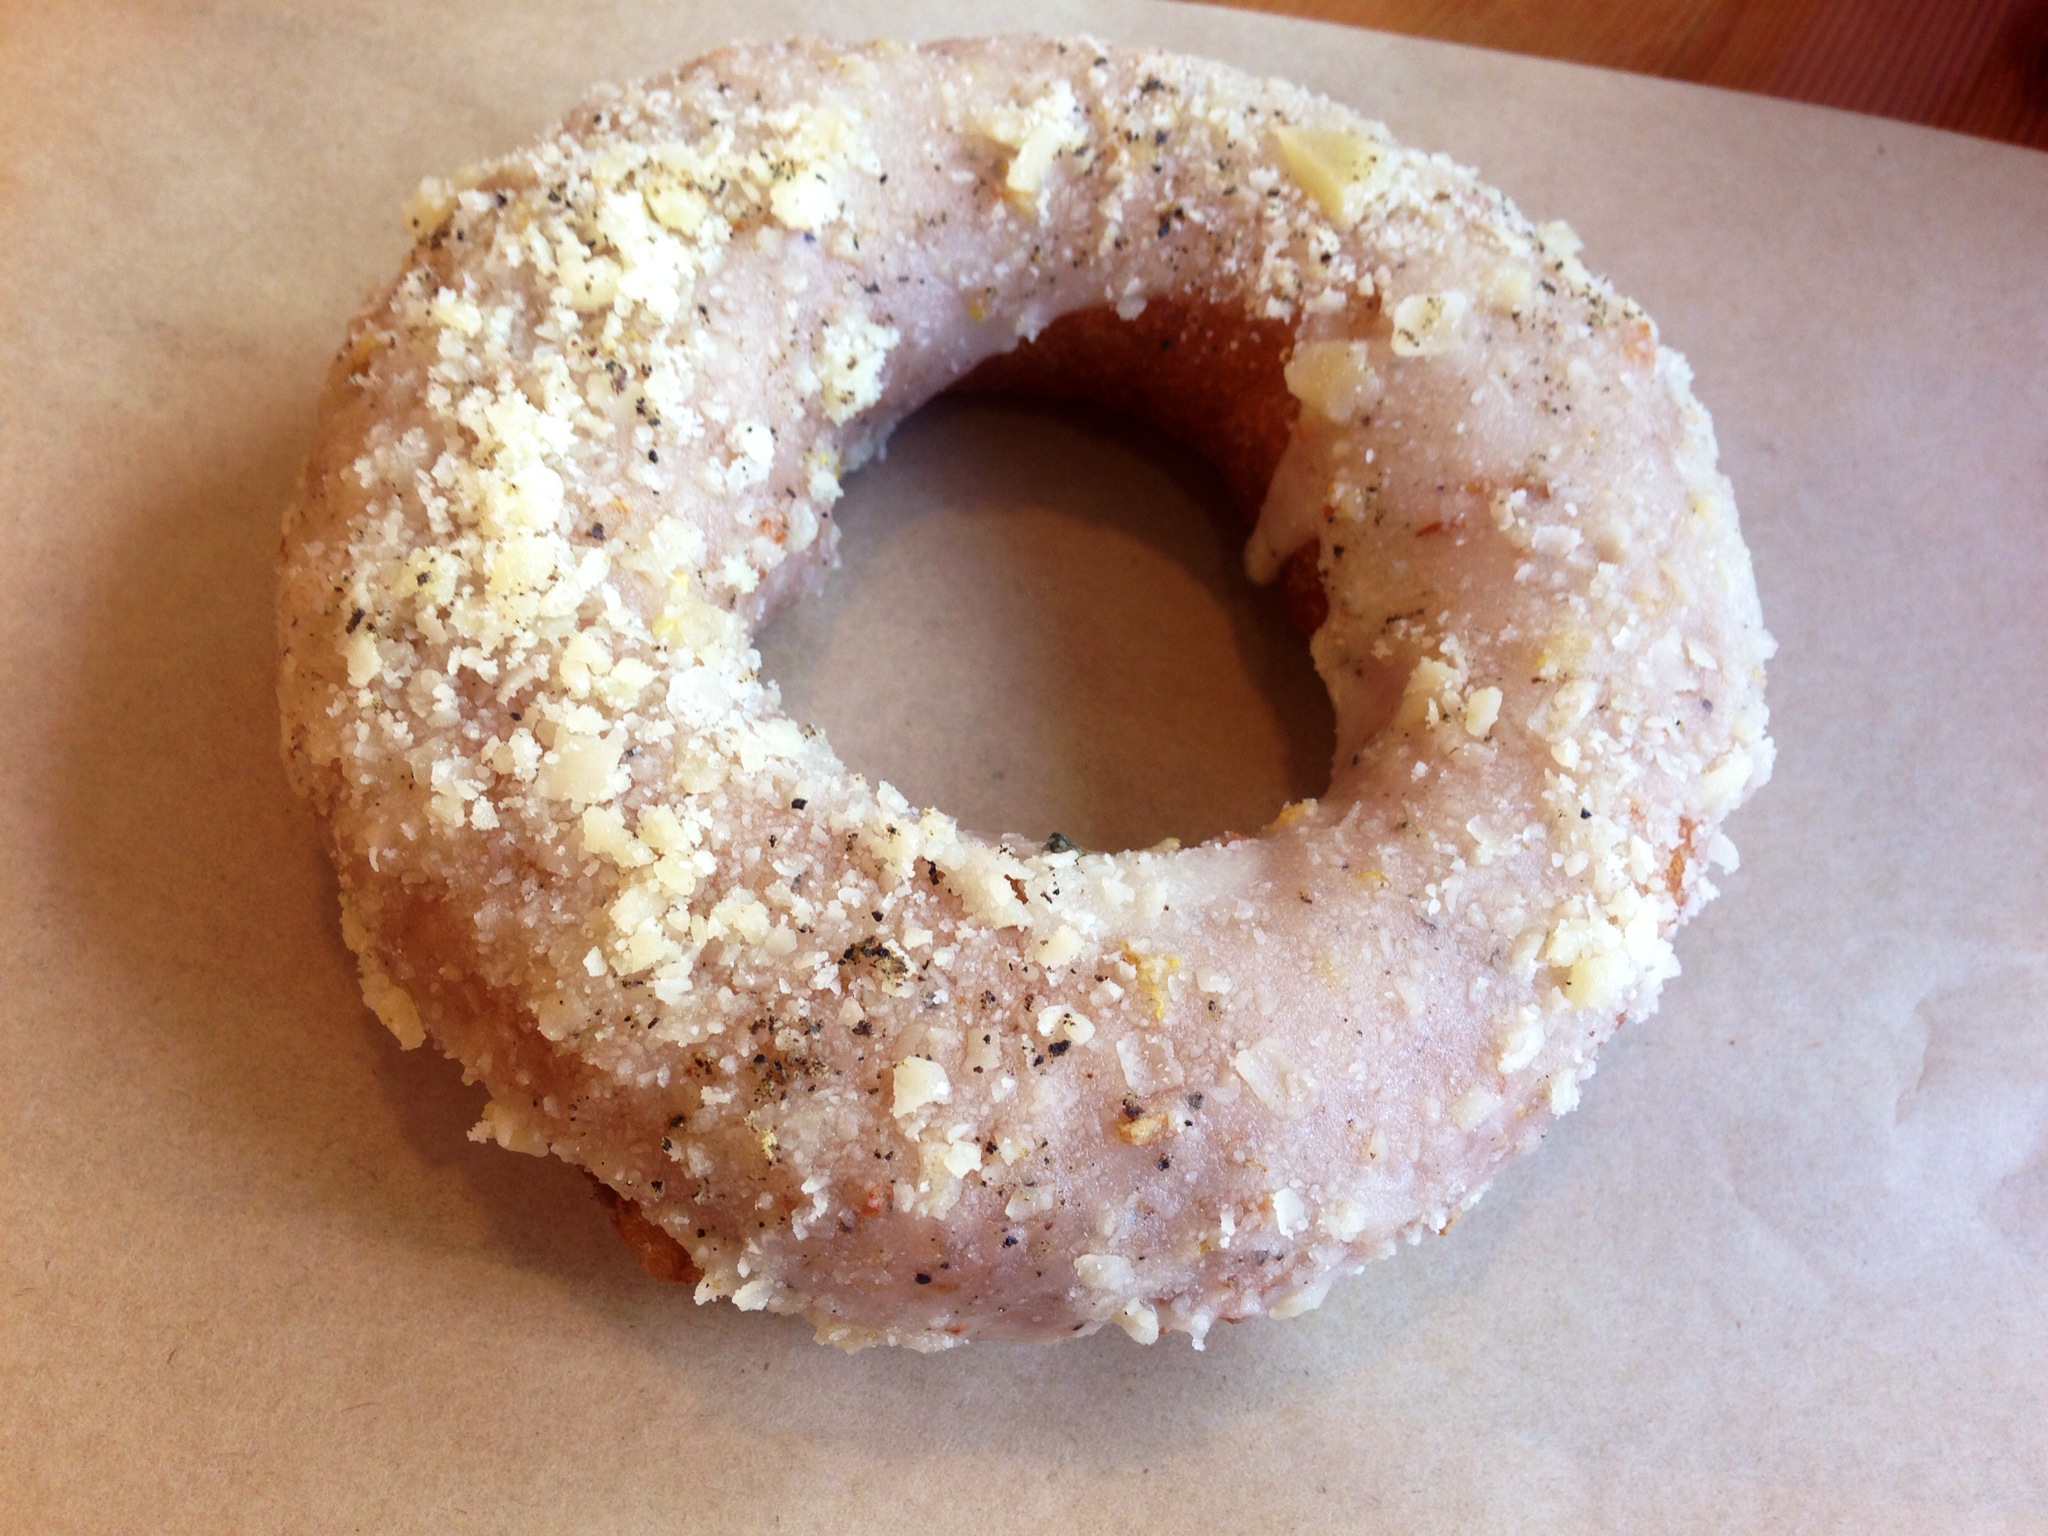 honey parmesan donut @ Cartems